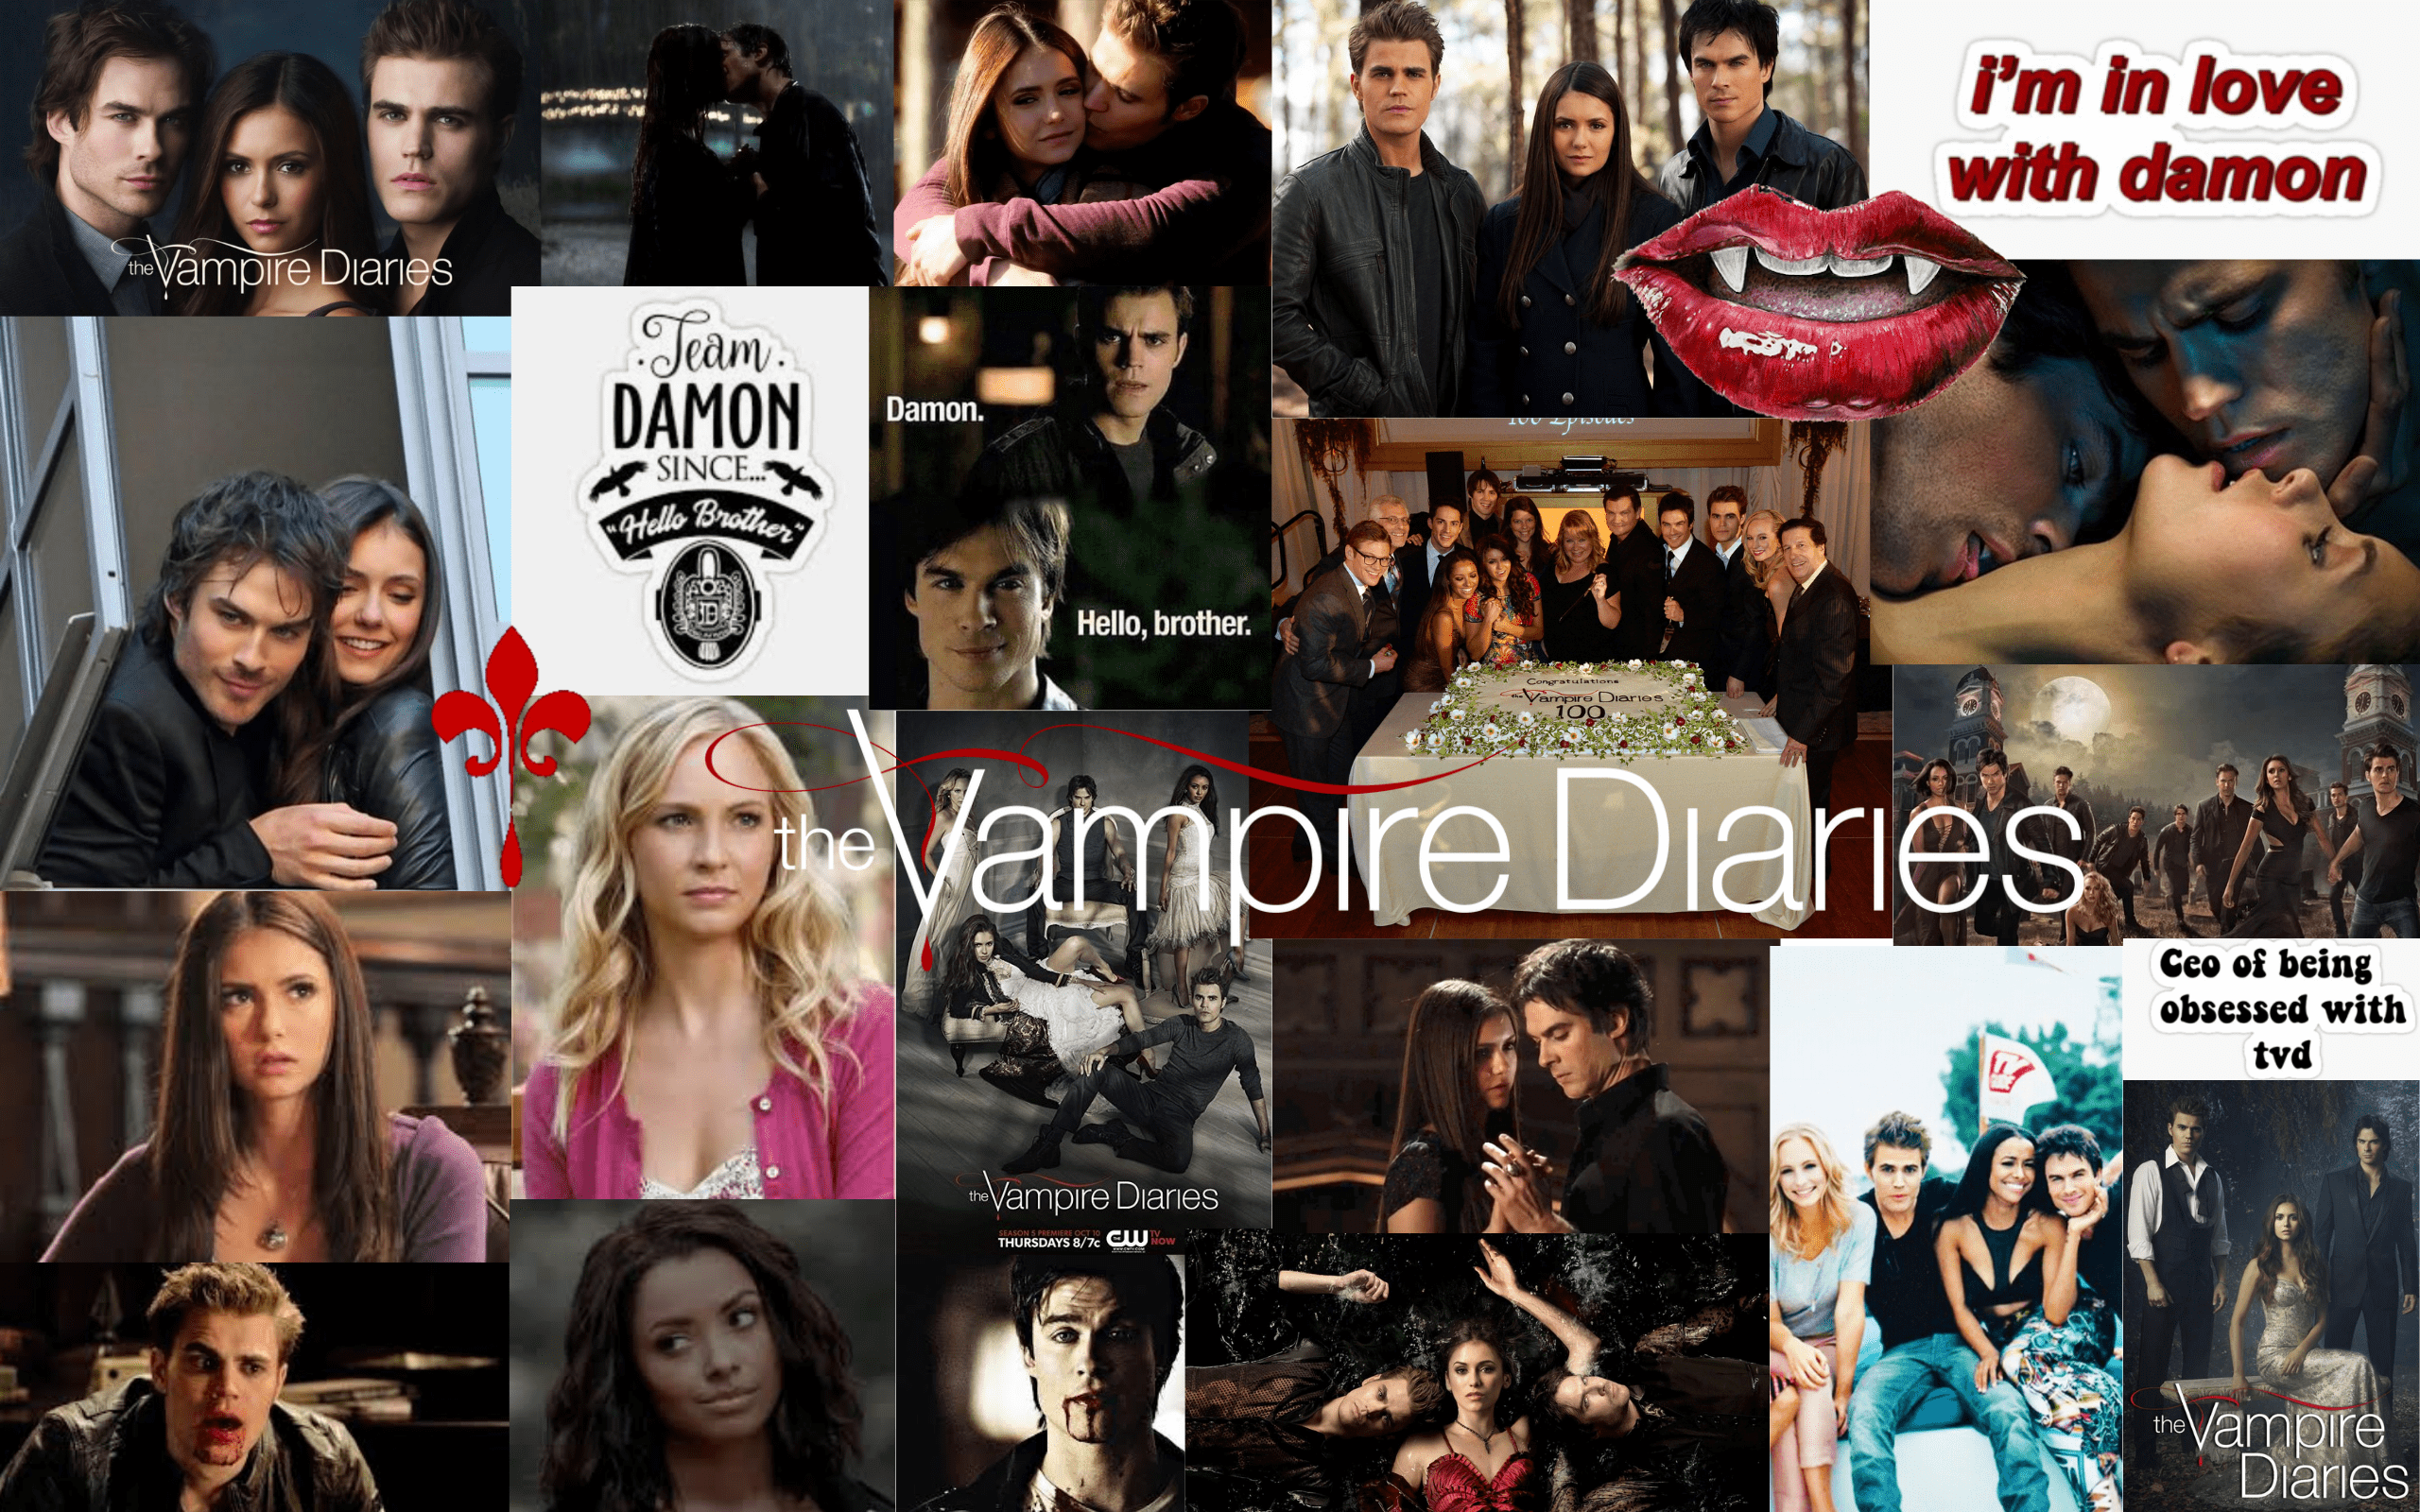 vampire diaries season 5 wallpapers